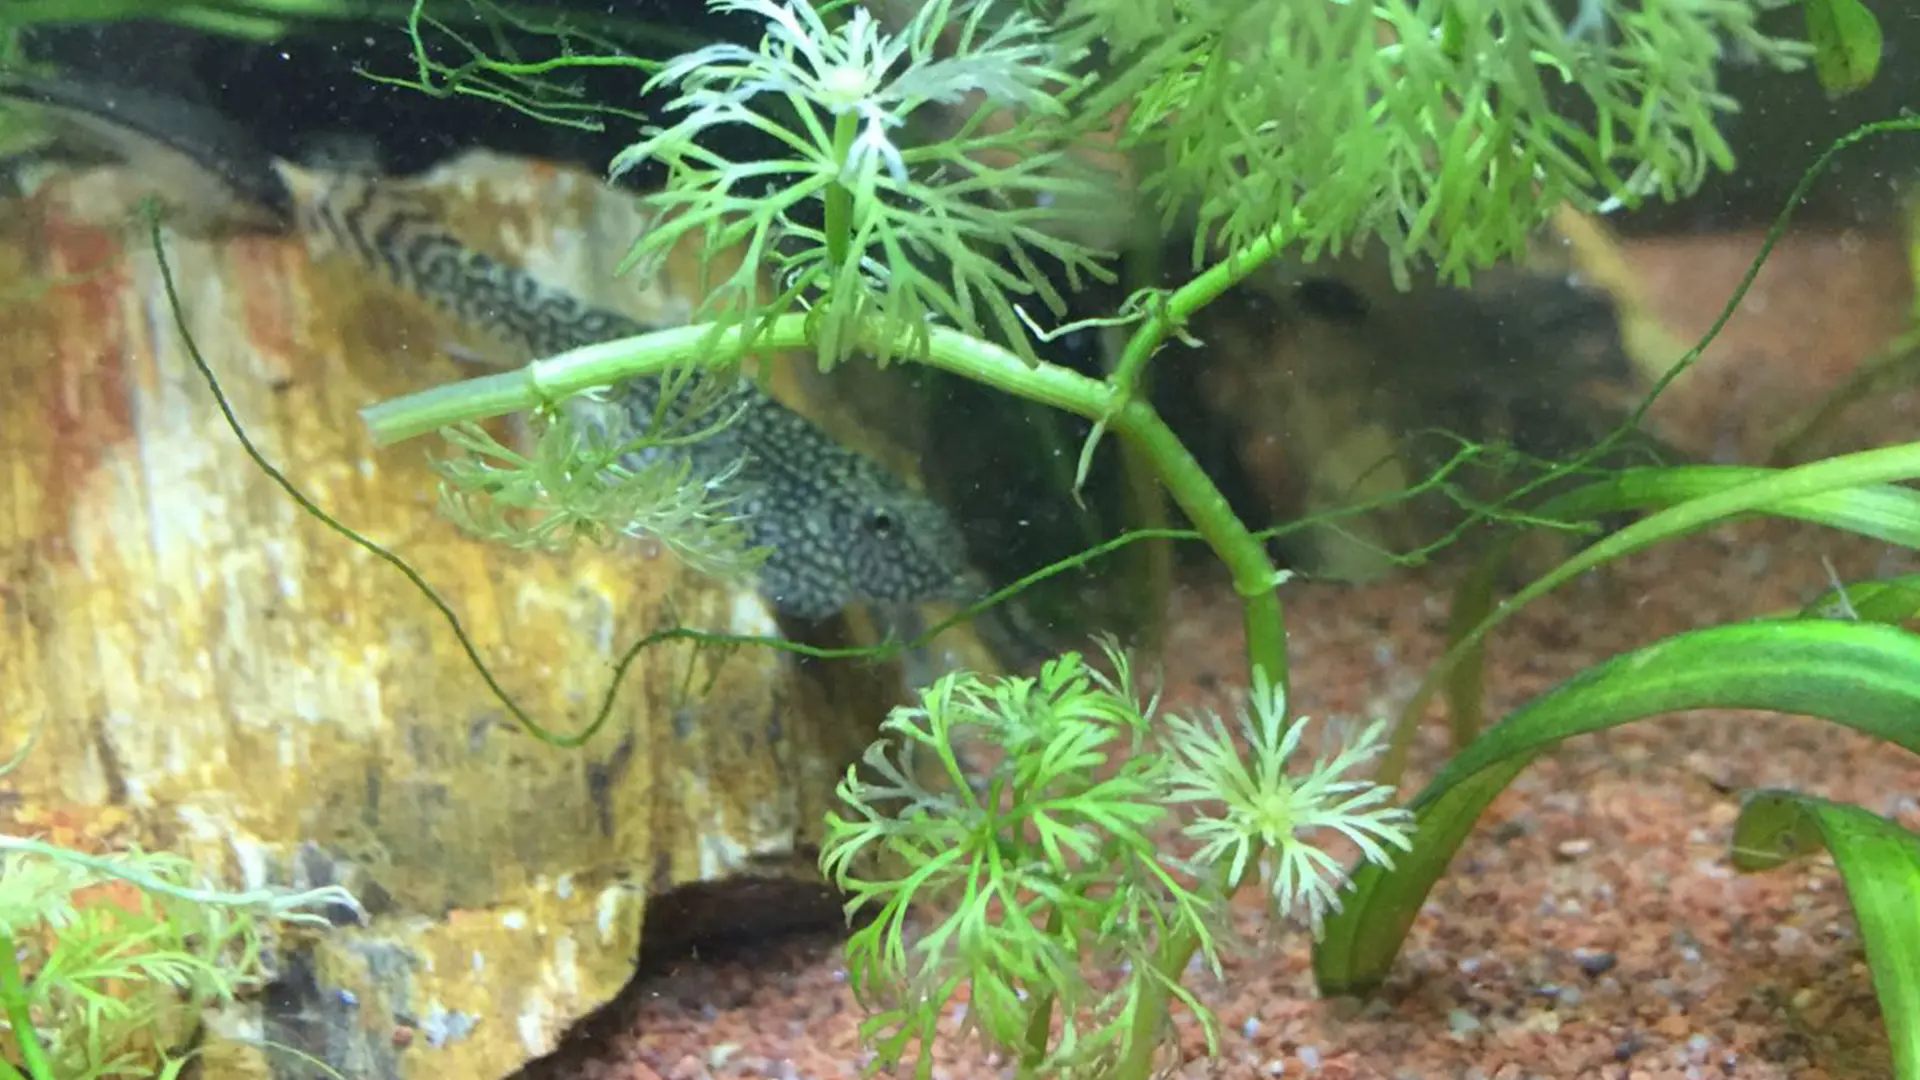 תמונה מתוך האקווריום - דג מנקה על קרקעית האקווריום עם צמחים מסביב